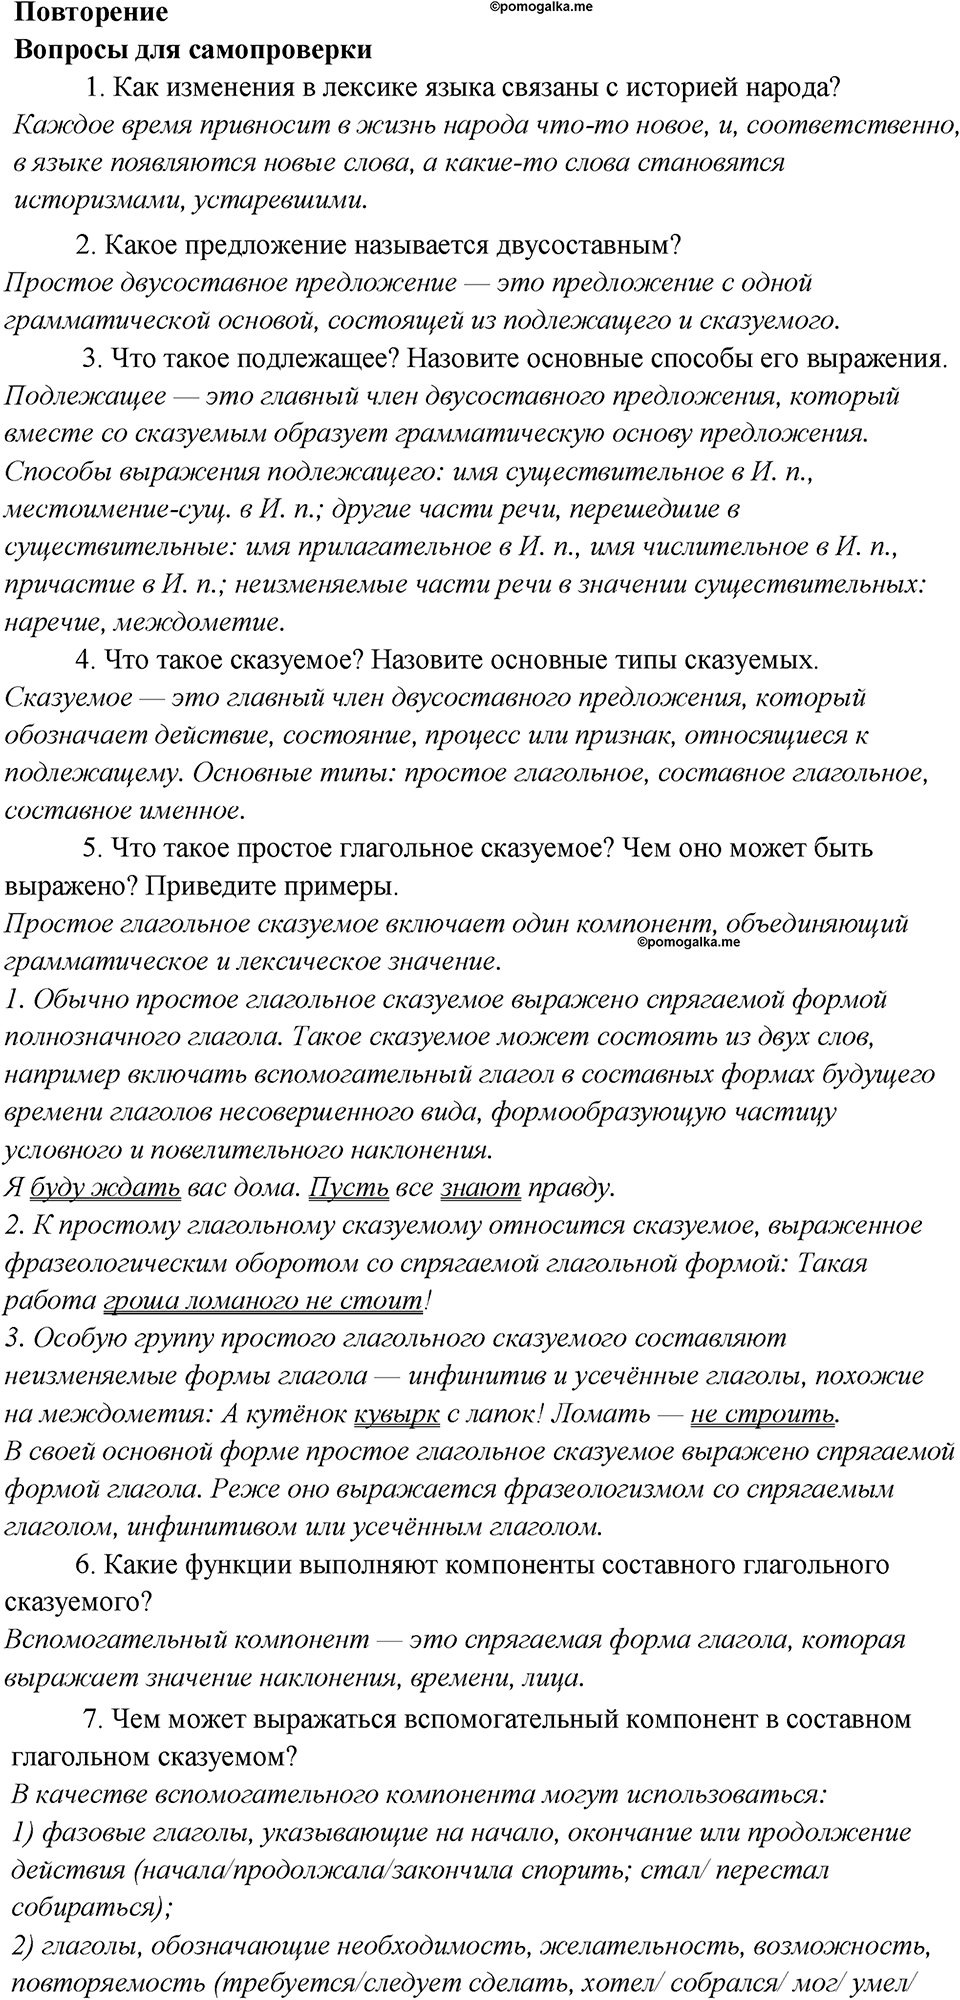 Повторение, Вопросы и задания для самопроверки №2 русский язык 7 класс Шмелев